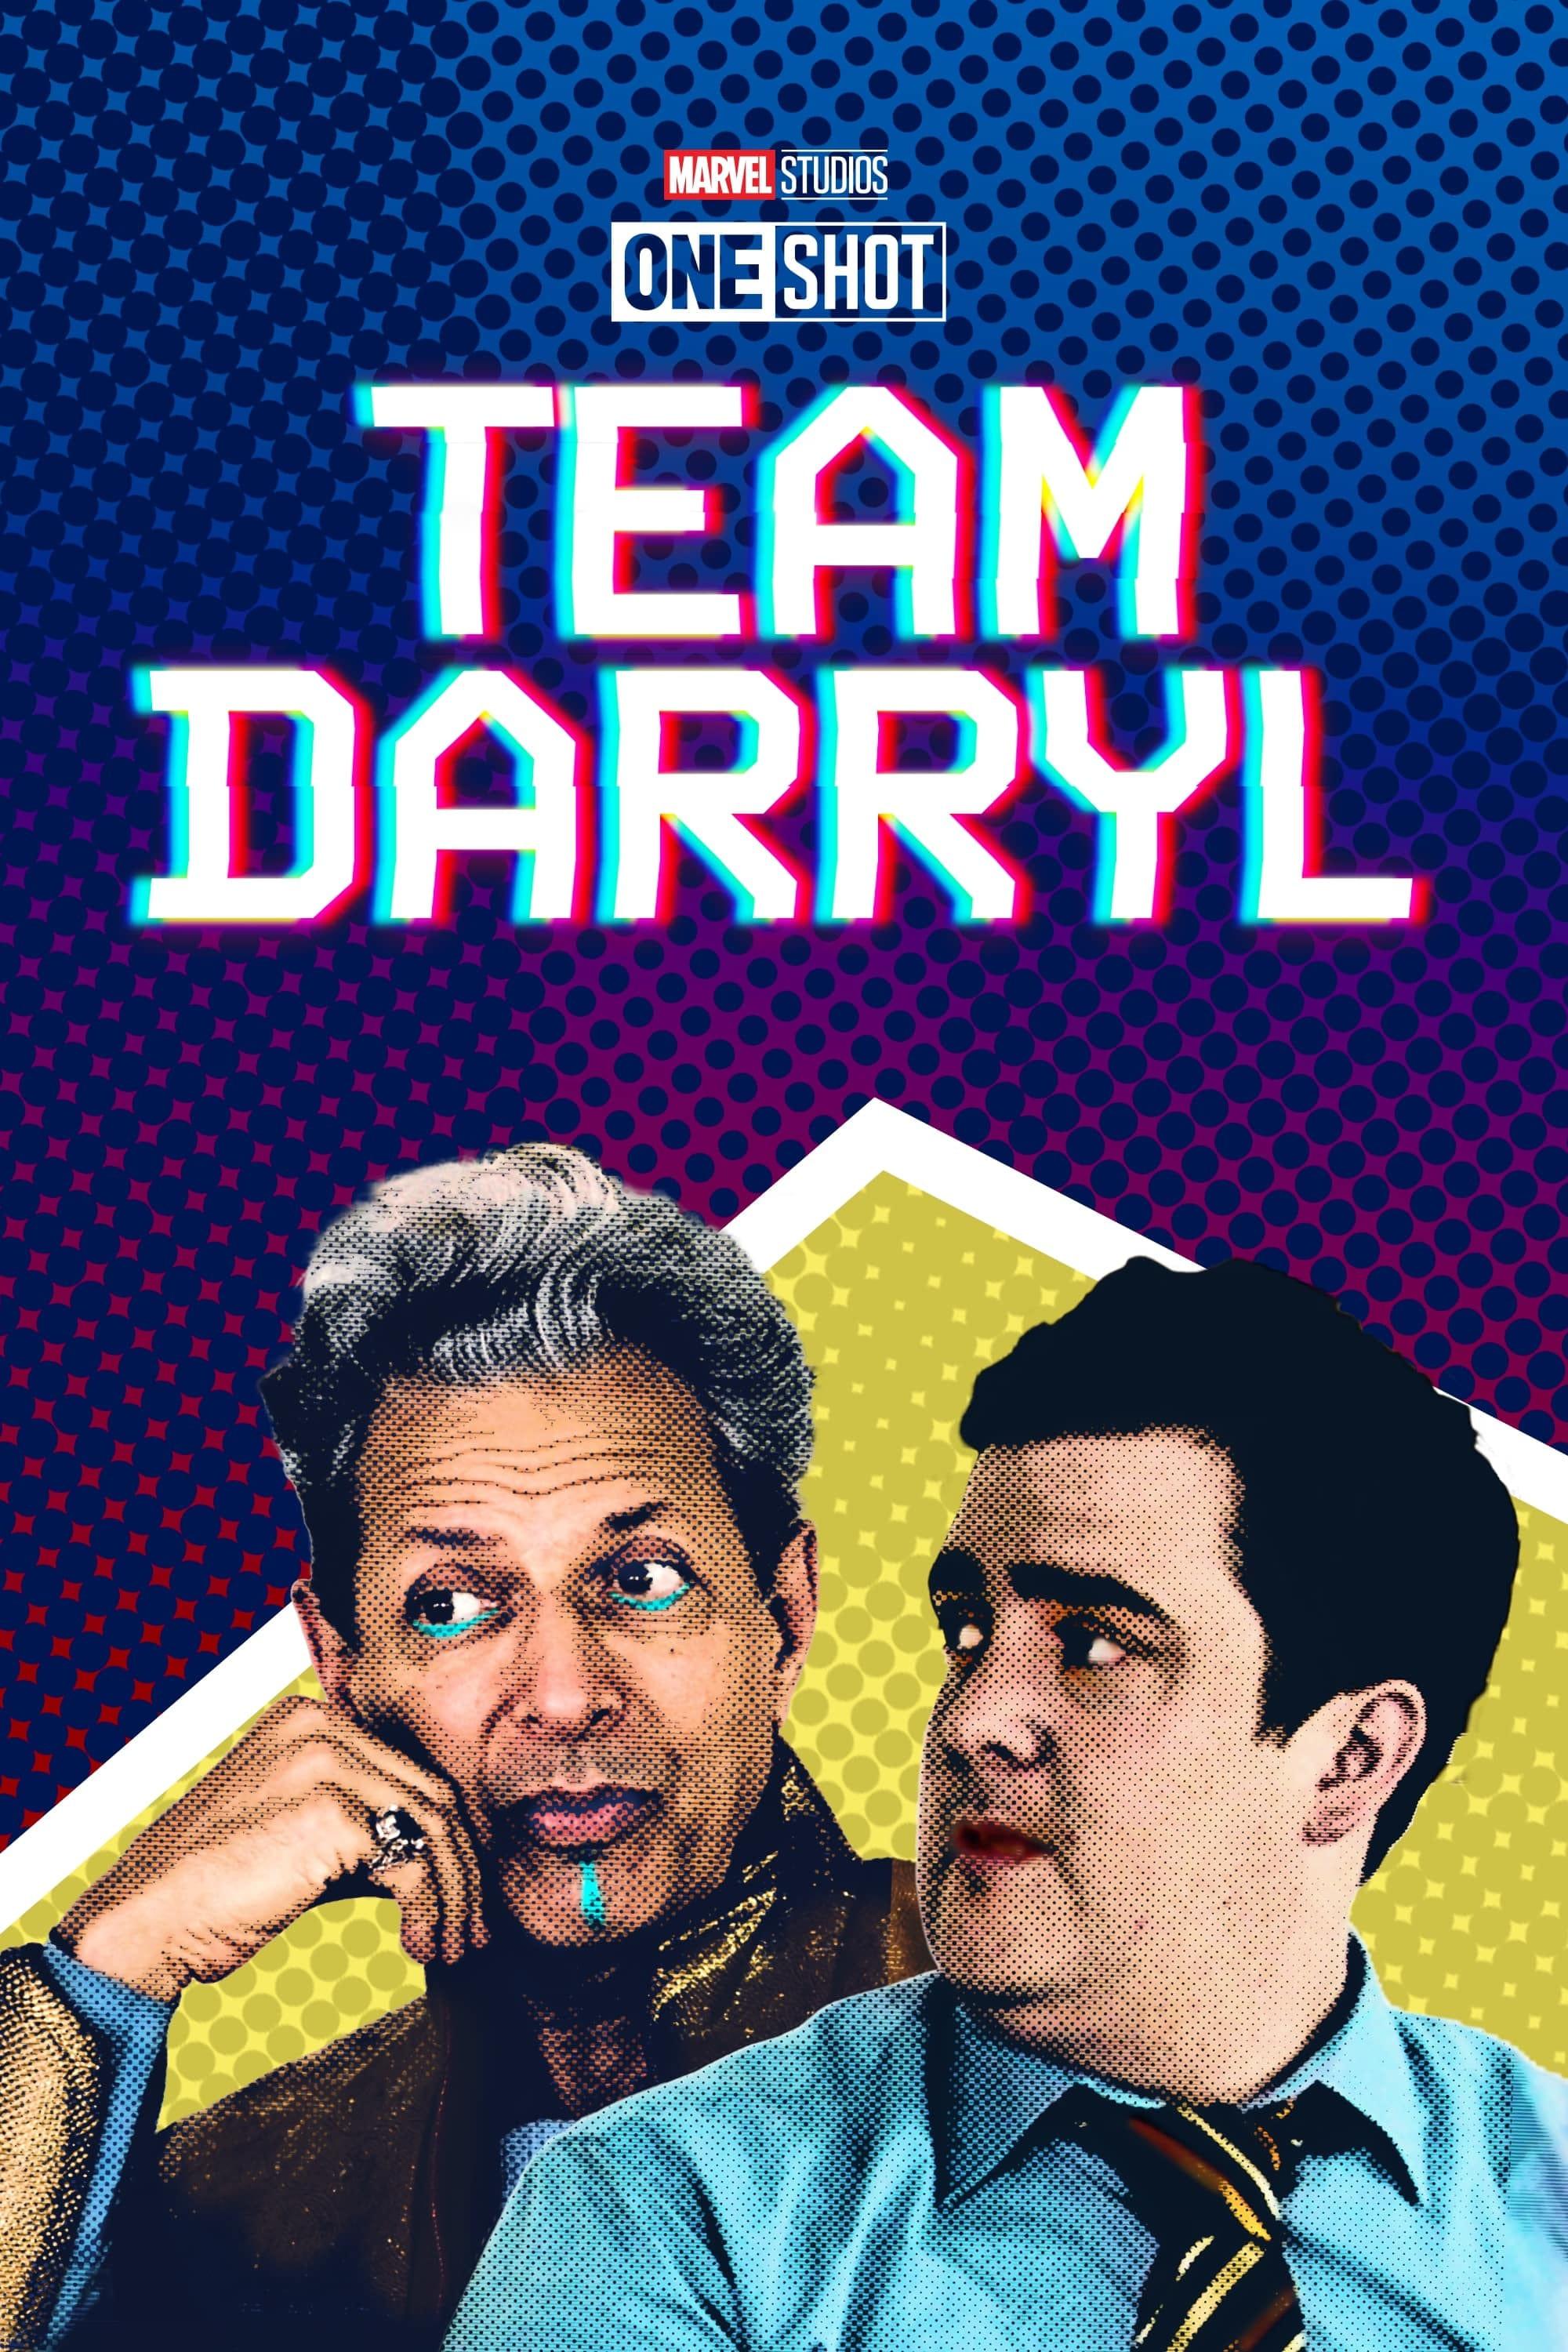 Team Darryl poster